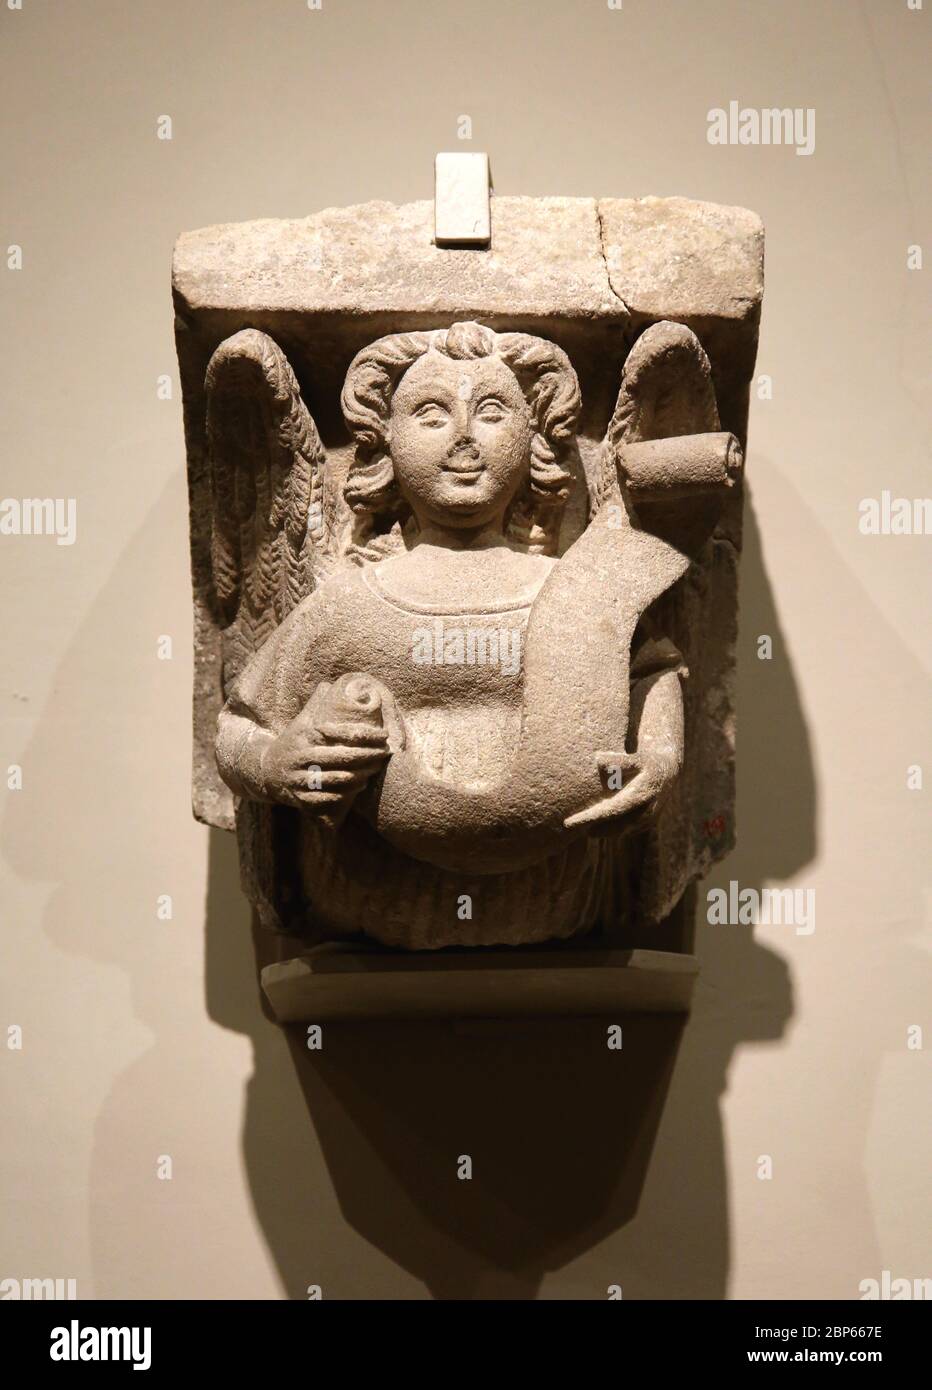 Piedra de corbel tallada con ángel del siglo 15. Jordi de Deu ( c. 1363-1418) o taller. Arte gótico catalán Museo Frederic Mares, Barcelona. Foto de stock